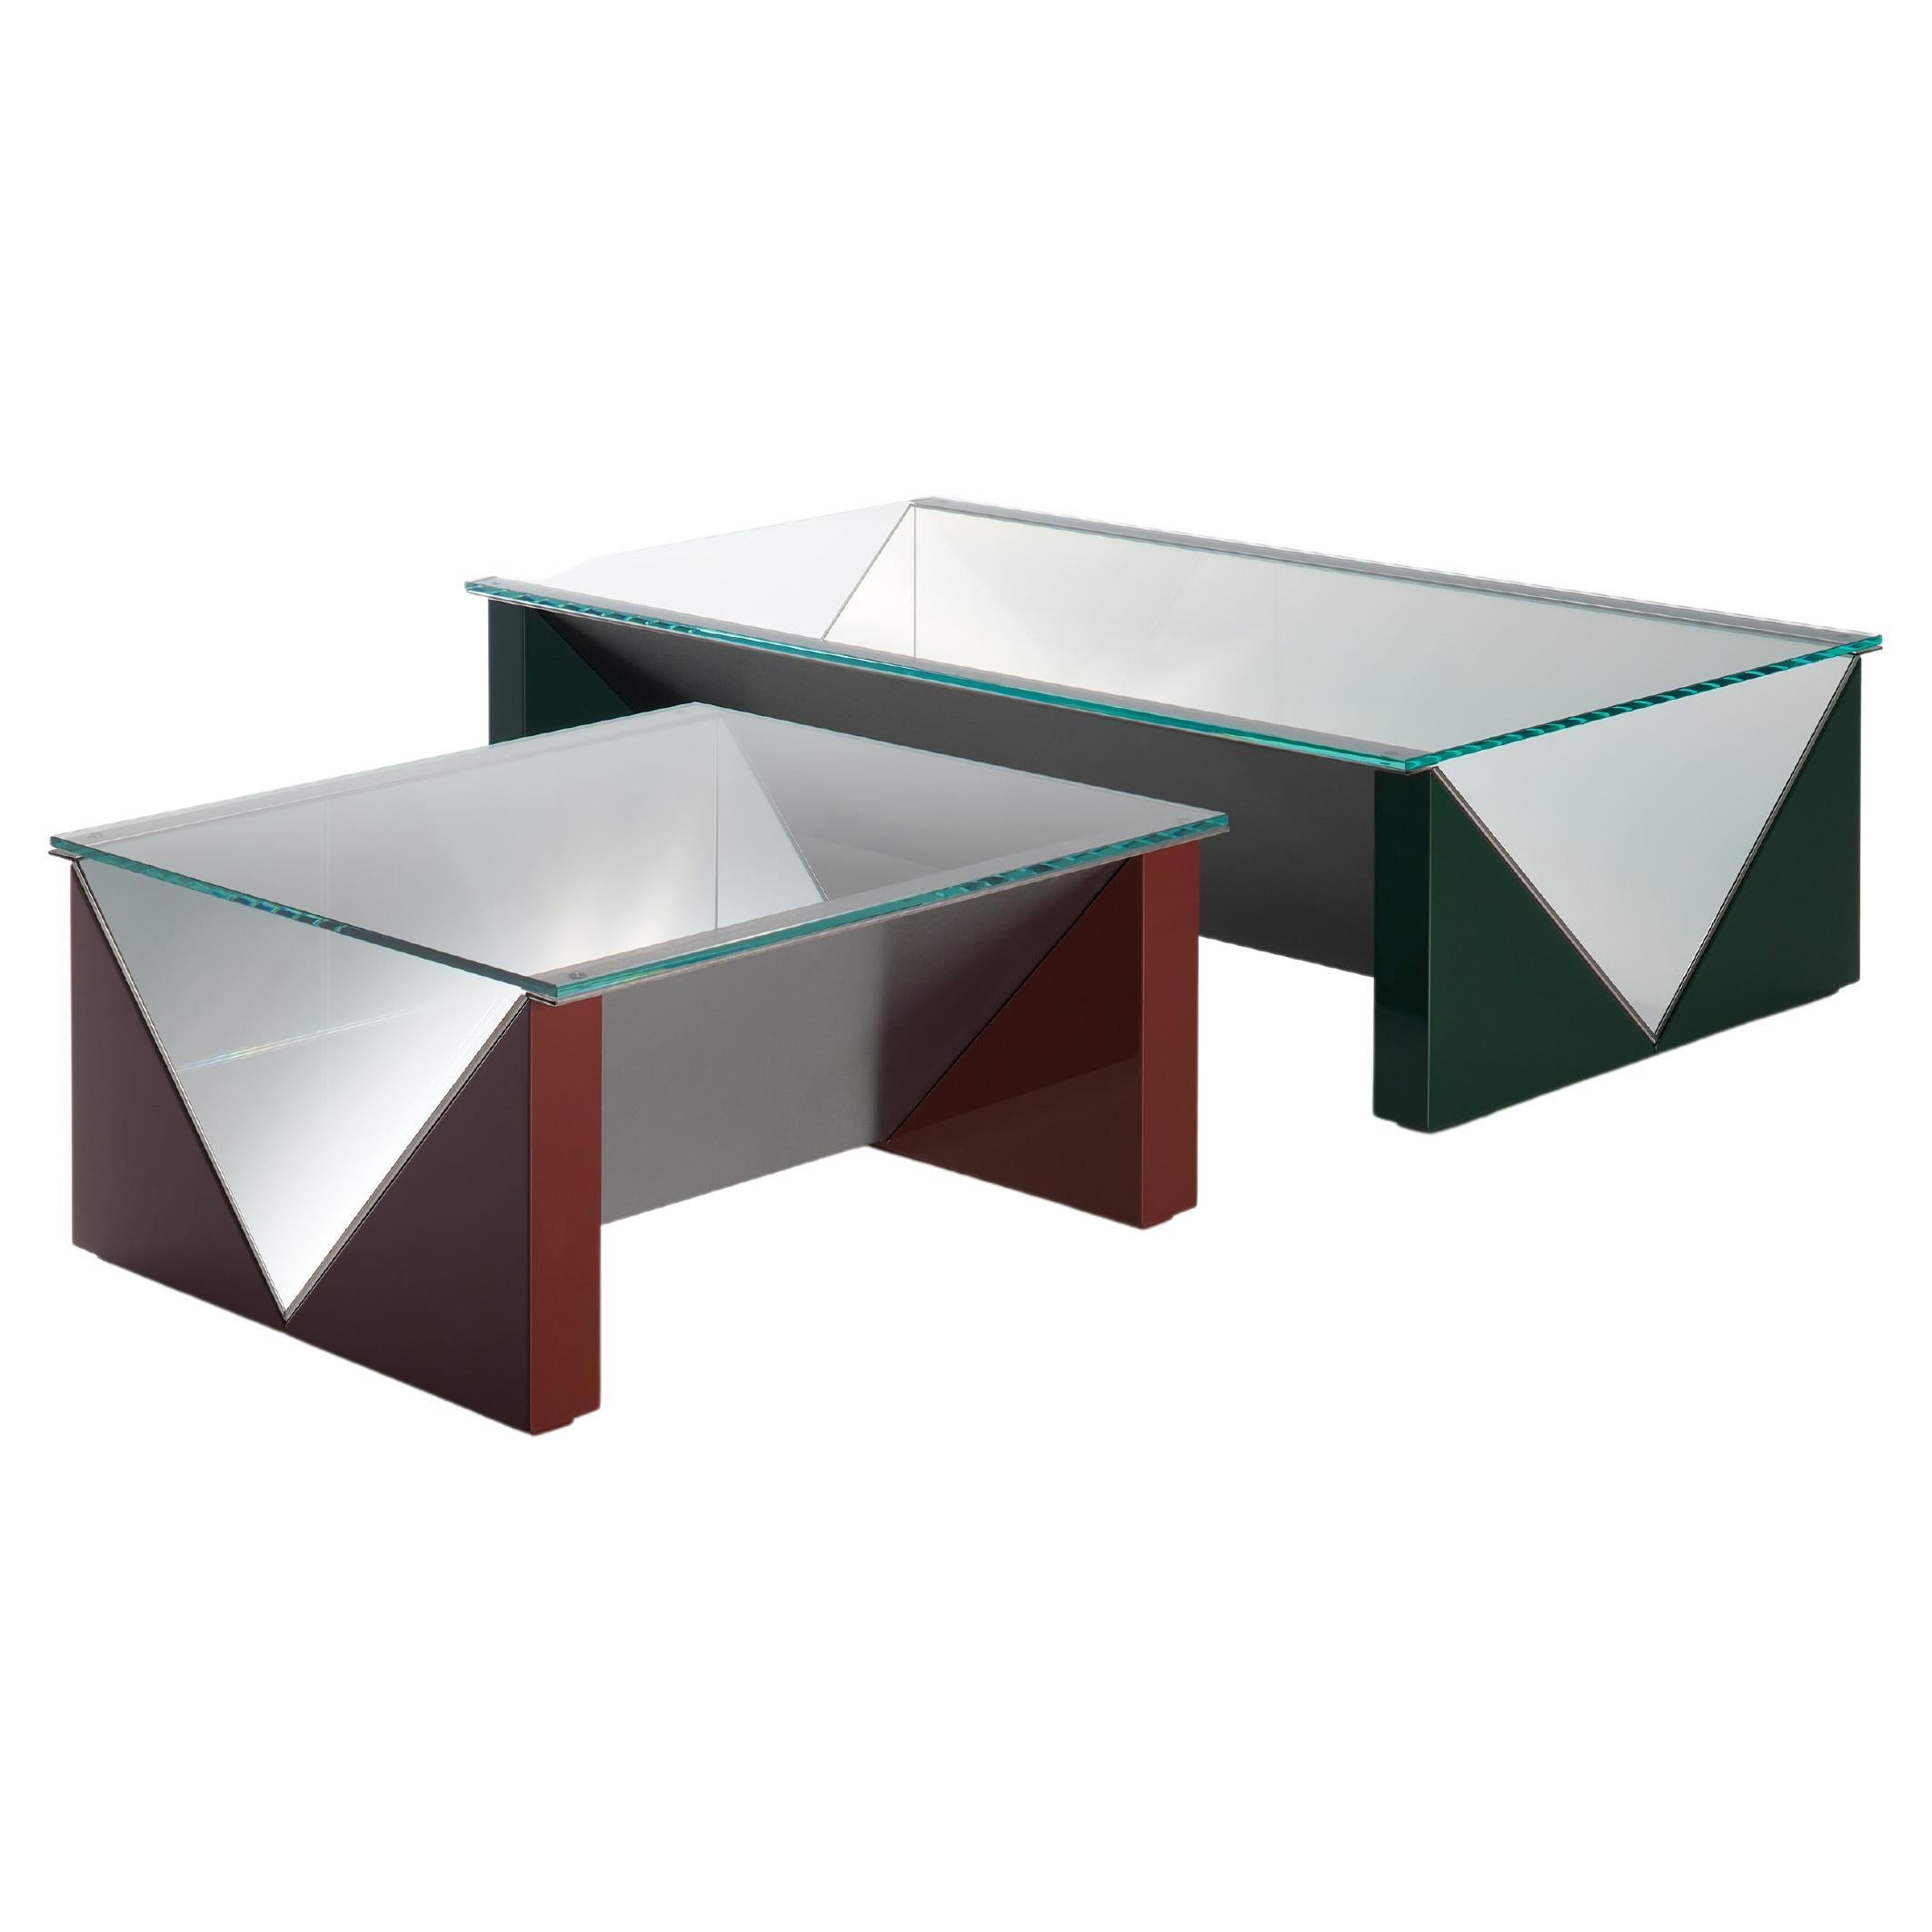 Lors de la 15e Triennale de Milan en 1973, Claudio Salocchi a lancé la famille Napoleone, composée de tables, de tables basses et de présentoirs, une interprétation extrêmement synthétique des géométries combinées à des matériaux qui n'étaient pas